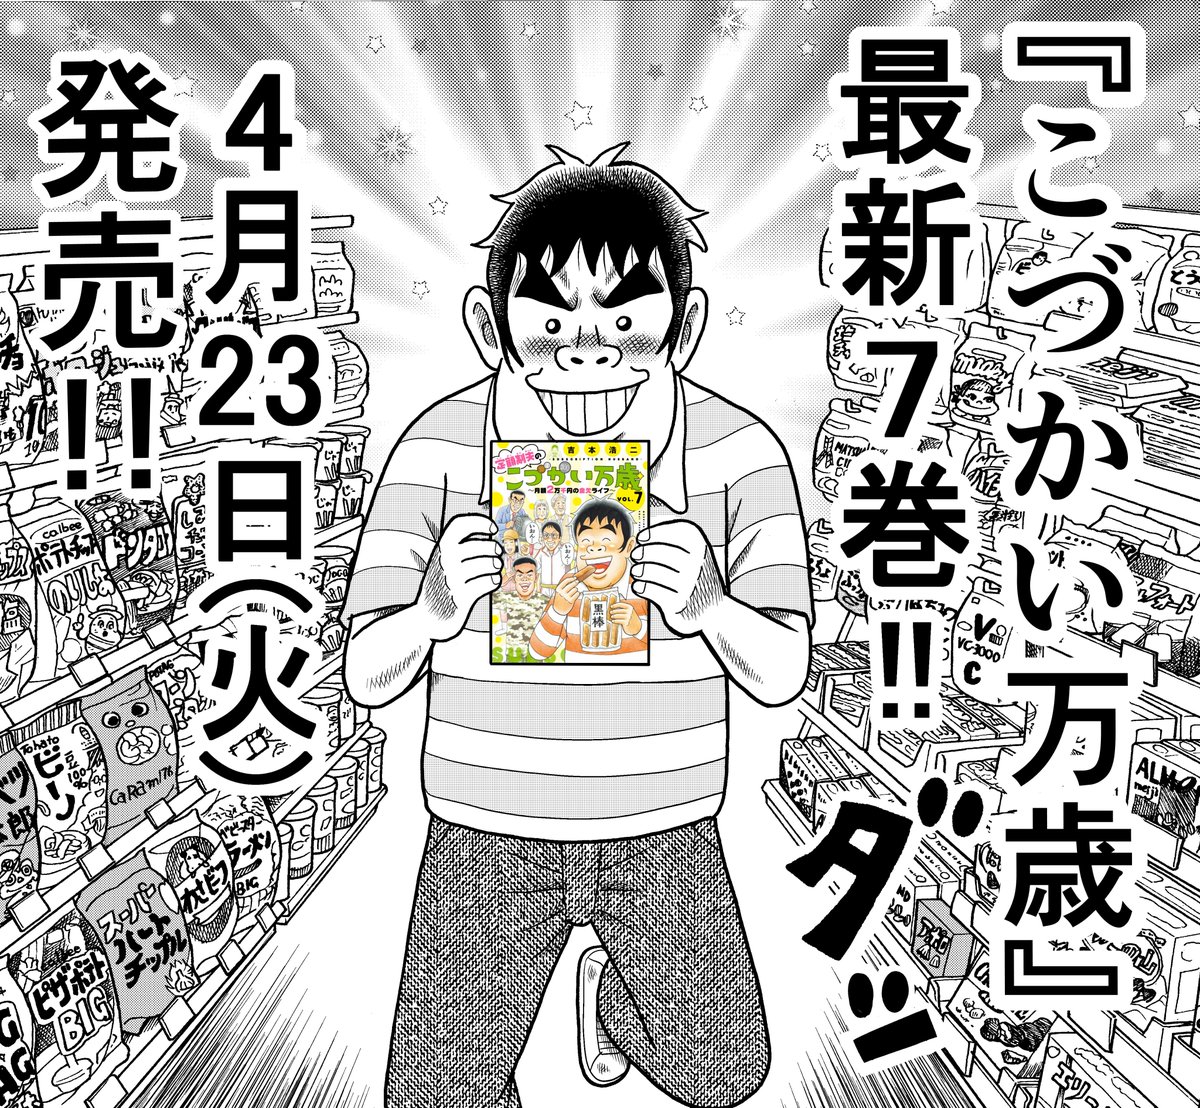 やったぁ〜!!『こづかい万歳』最新7巻、明日4月23日発売!!作者本人もテンションMAXです!! 